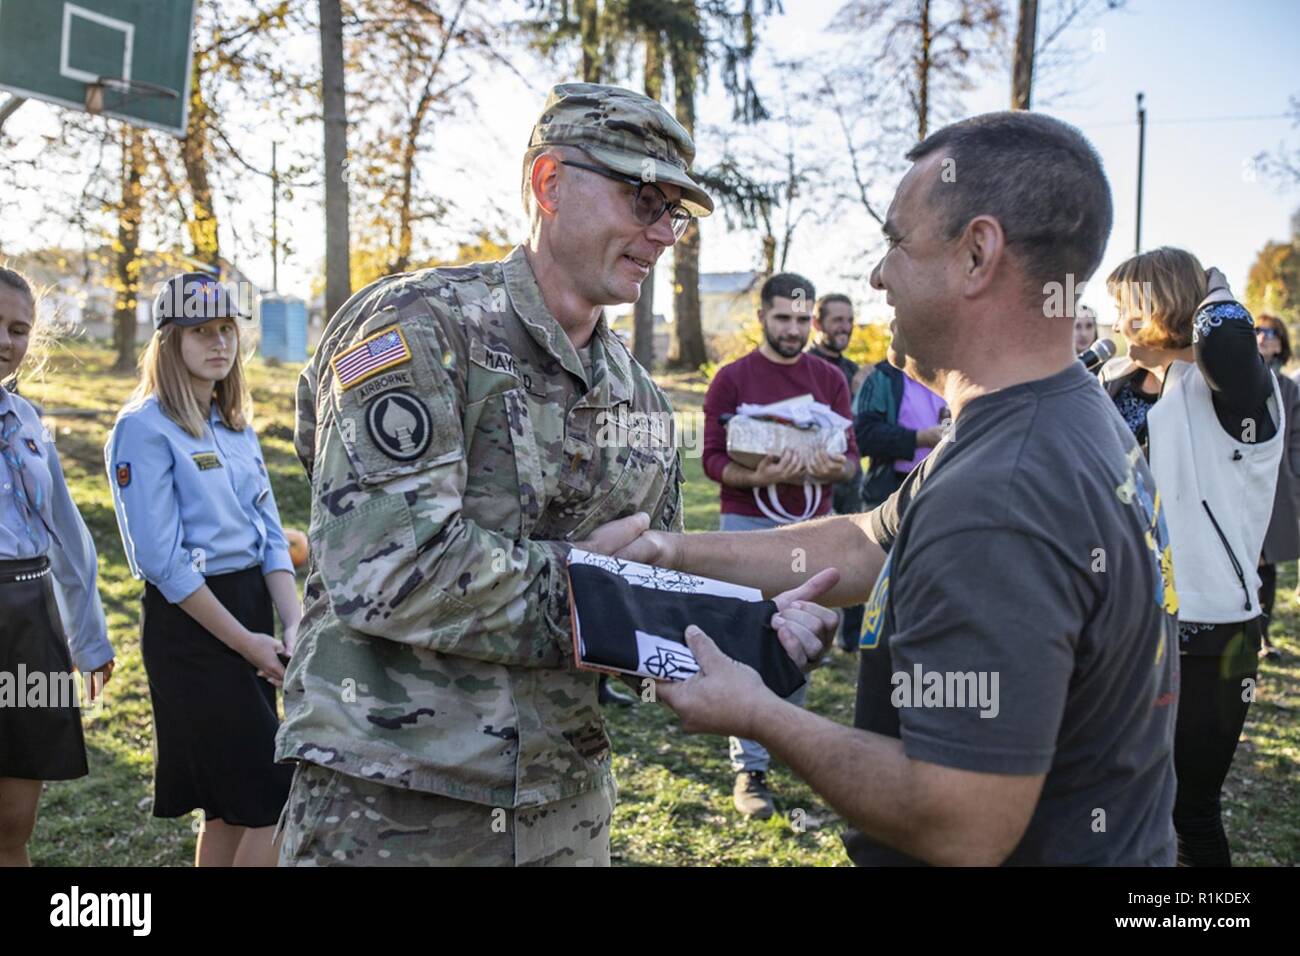 2 Lt. Richard Mayfield aus der 278th Armored Cavalry Regiment von Tennessee erhält Auszeichnung von der Organisation der Selbstverteidigung der Patriot Games Wettbewerb in Yavoriv, Ukraine, Okt. 14. Stockfoto